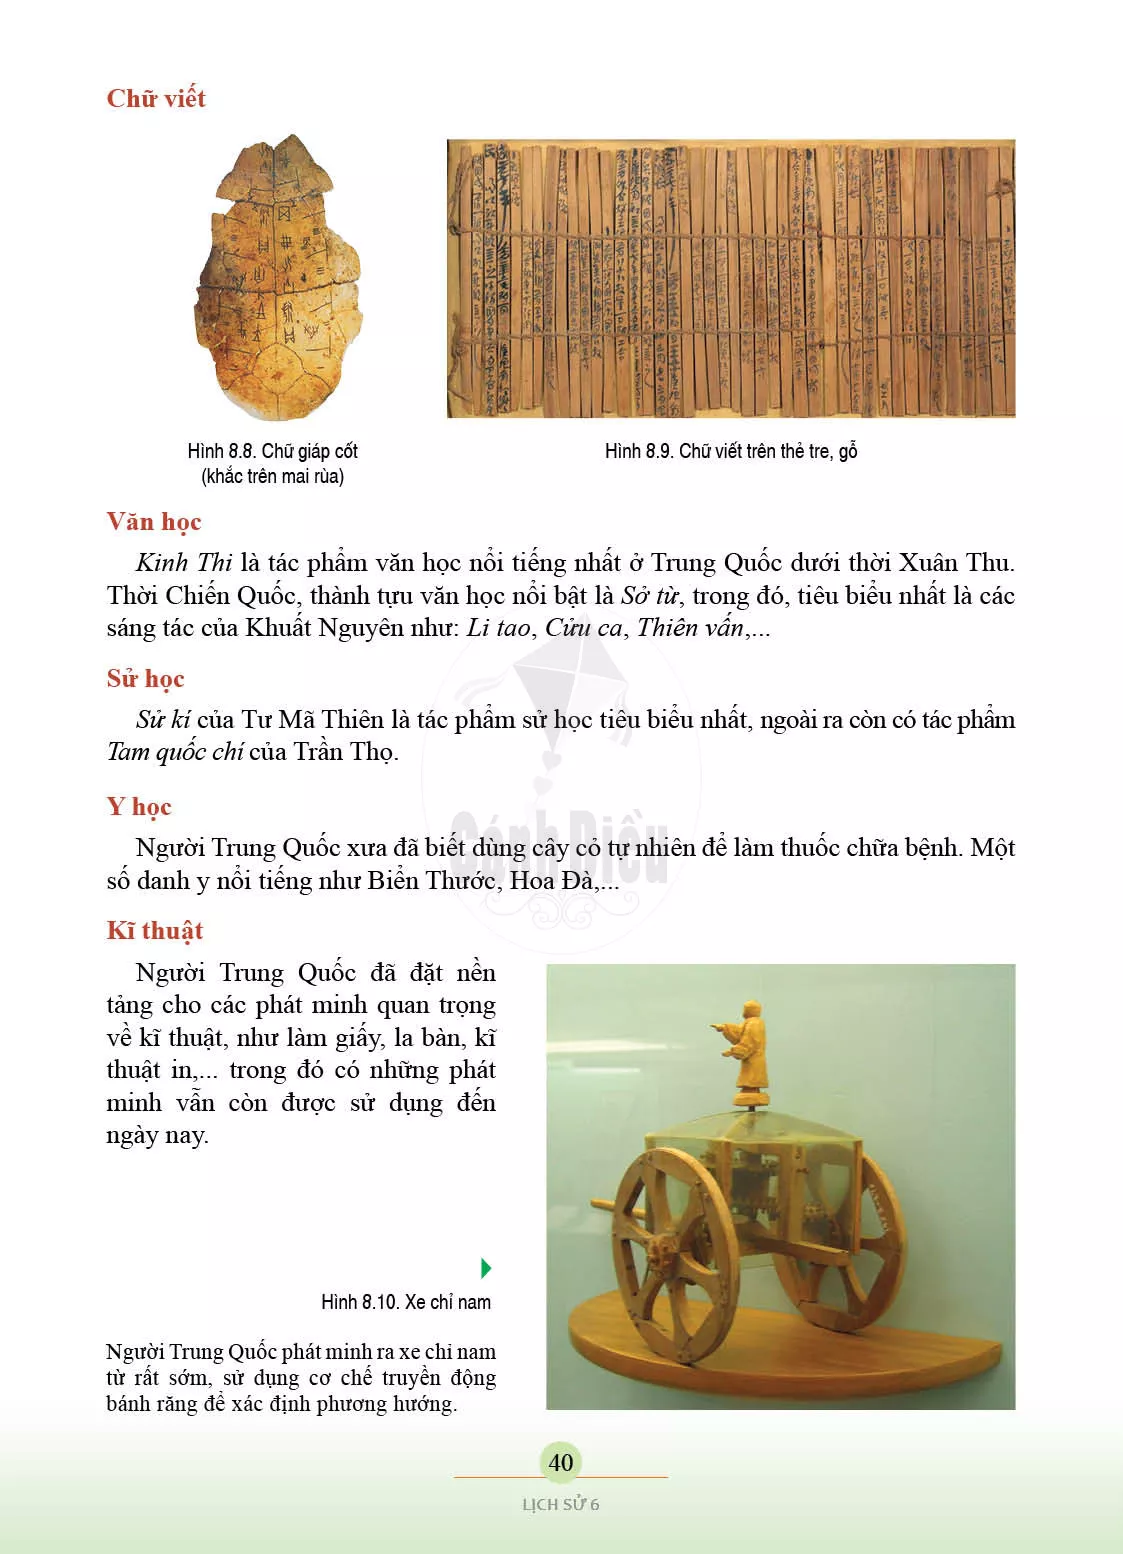 Bài 8. Trung Quốc từ thời cổ đại den the ki VII